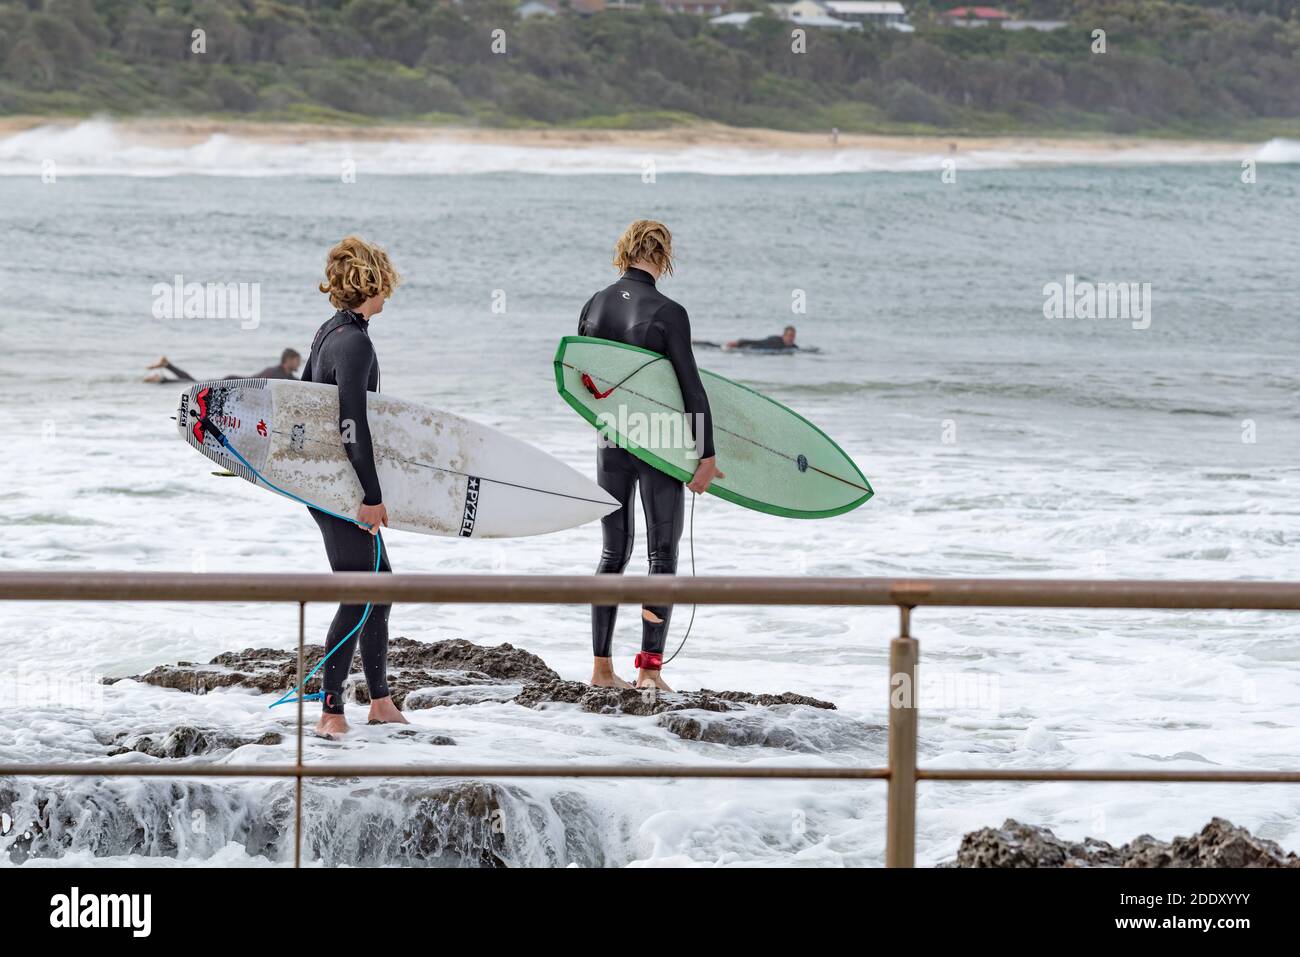 Deux jeunes cavaliers de planche de surf de sexe masculin regardent attentivement pendant qu'ils se préparent Pour sauter dans l'eau des rochers près de Black Head Beach Ocean pool en Australie Banque D'Images